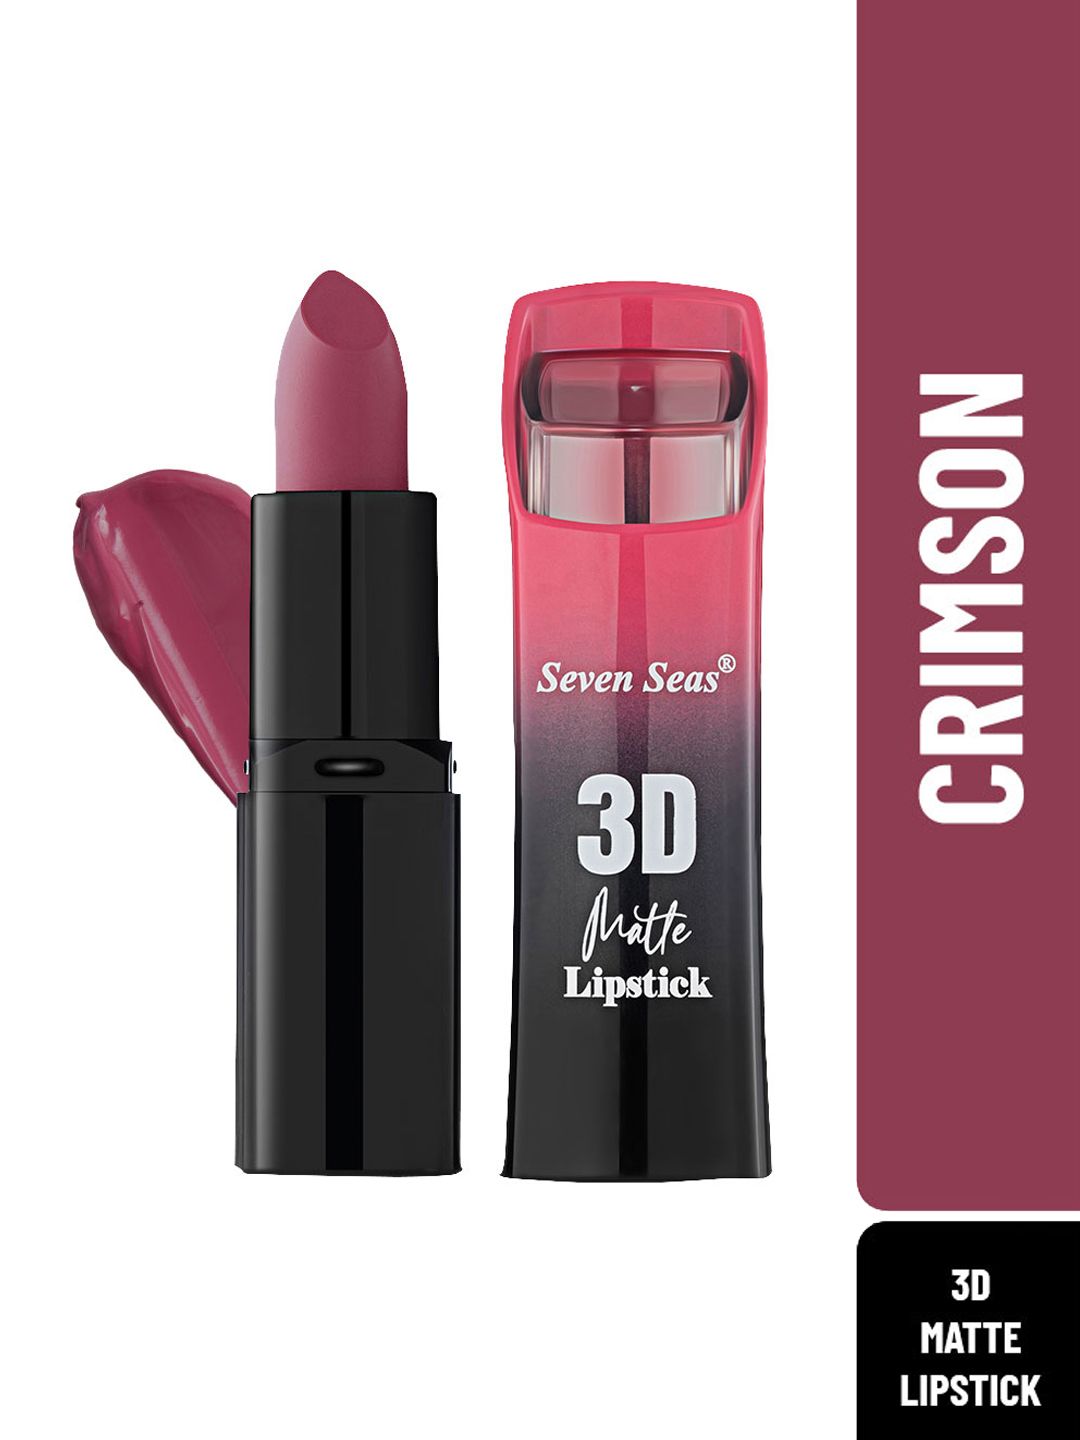 Seven Seas Crimson 3D Matte Full Coverage Lipstick Price in India